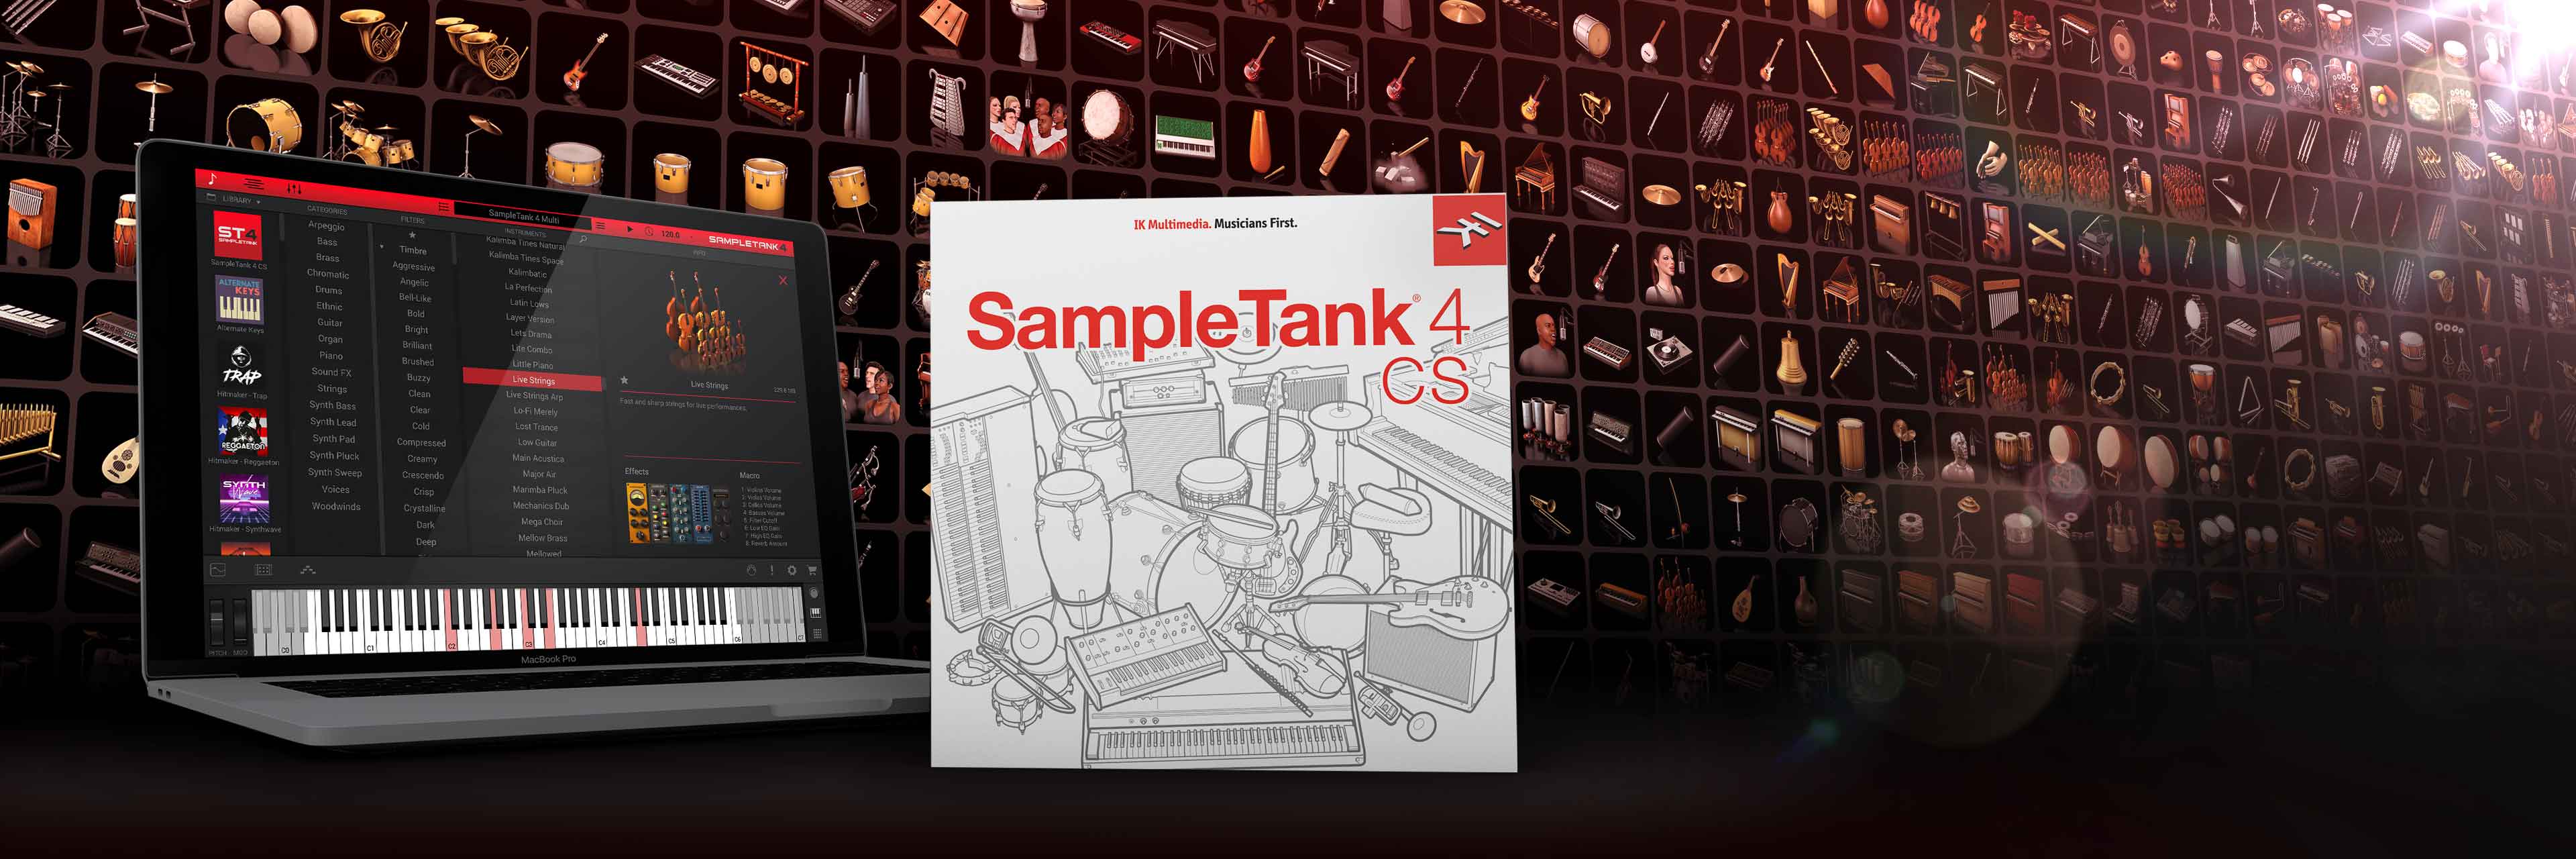 new improved sampletank 4 download